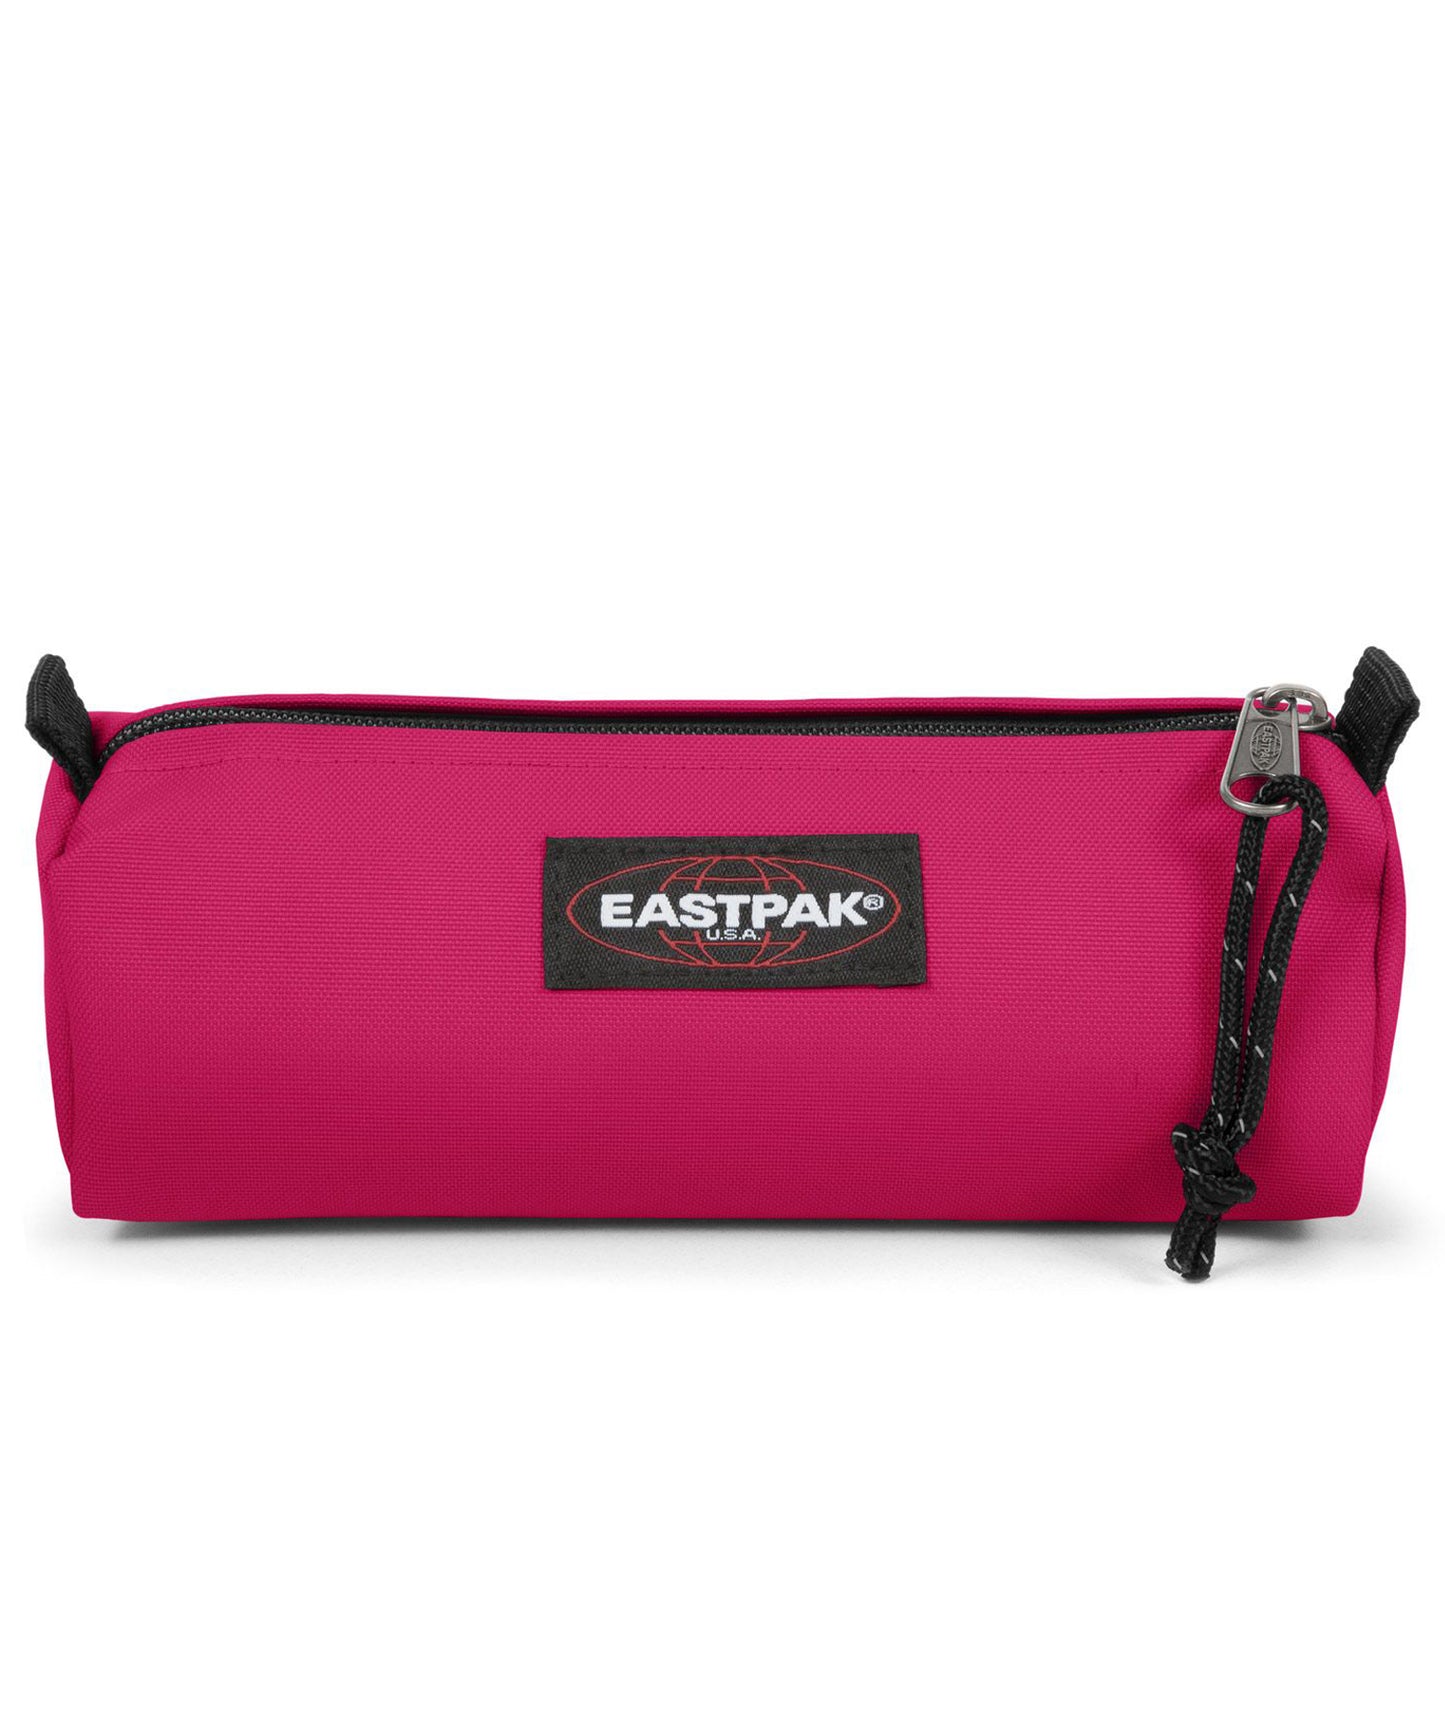 eastpak estuche benchmark de color rosa chilón, practico, sencillo, y duradero, cierre con cremallera.